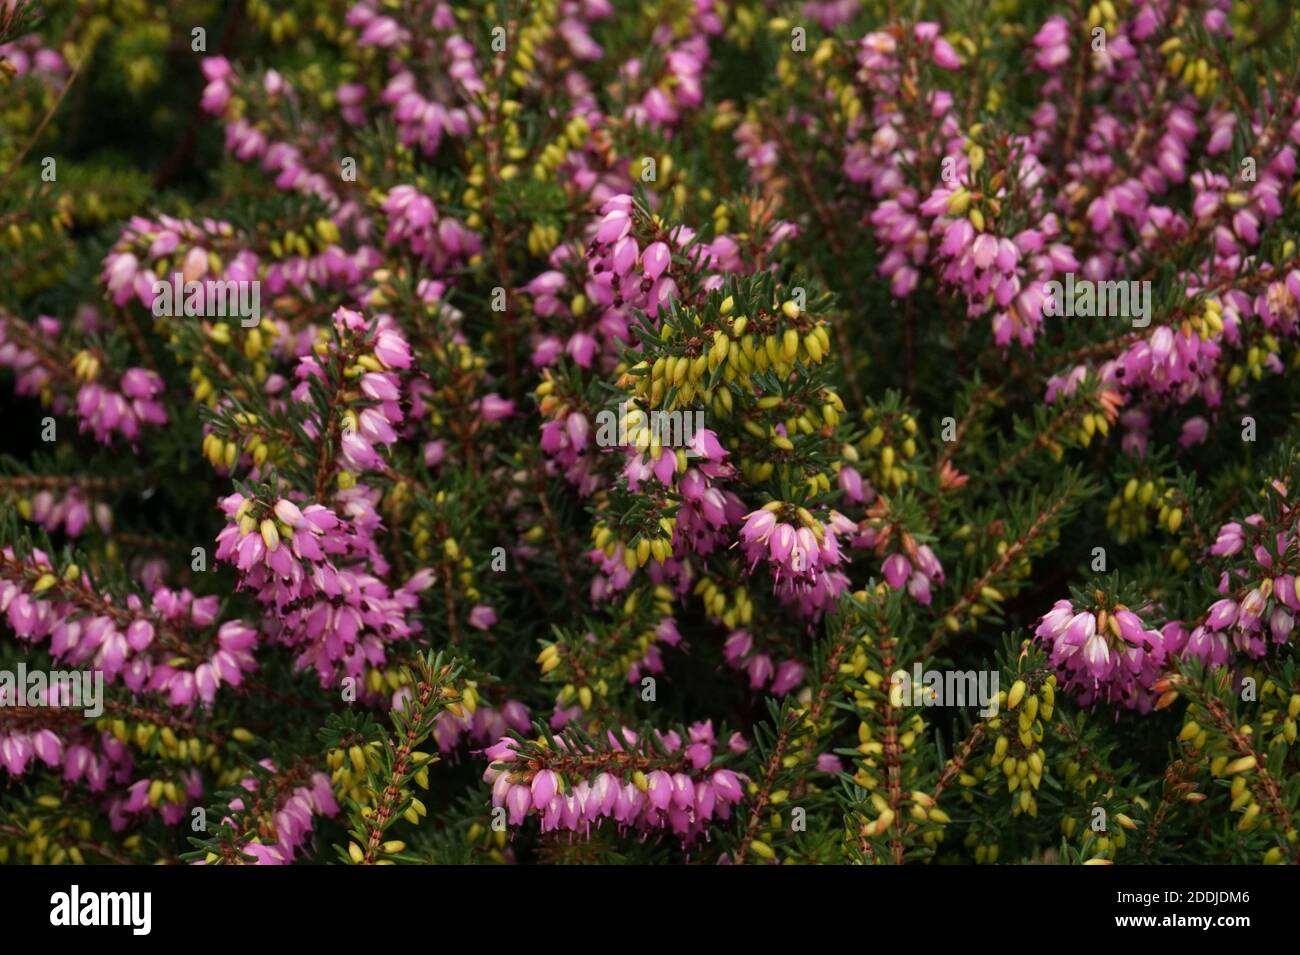 Pink Erica × darleyensis 'Furzey' or Kramer's Rote in flower, Autumn in an English Garden Stock Photo